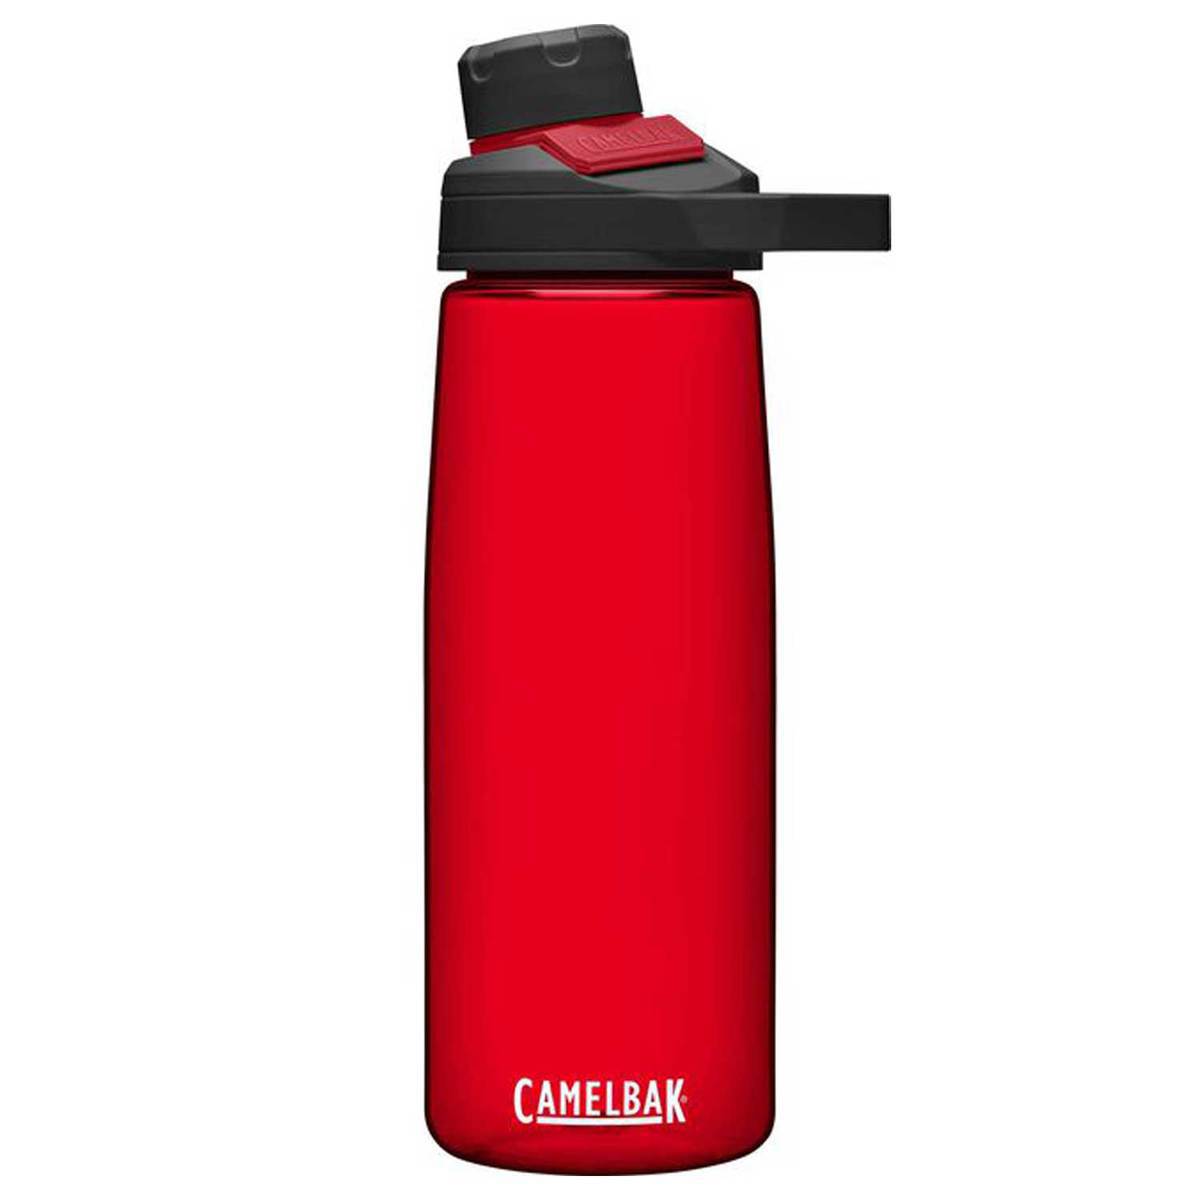 CamelBak Chute Water Bottle - 1 Liter